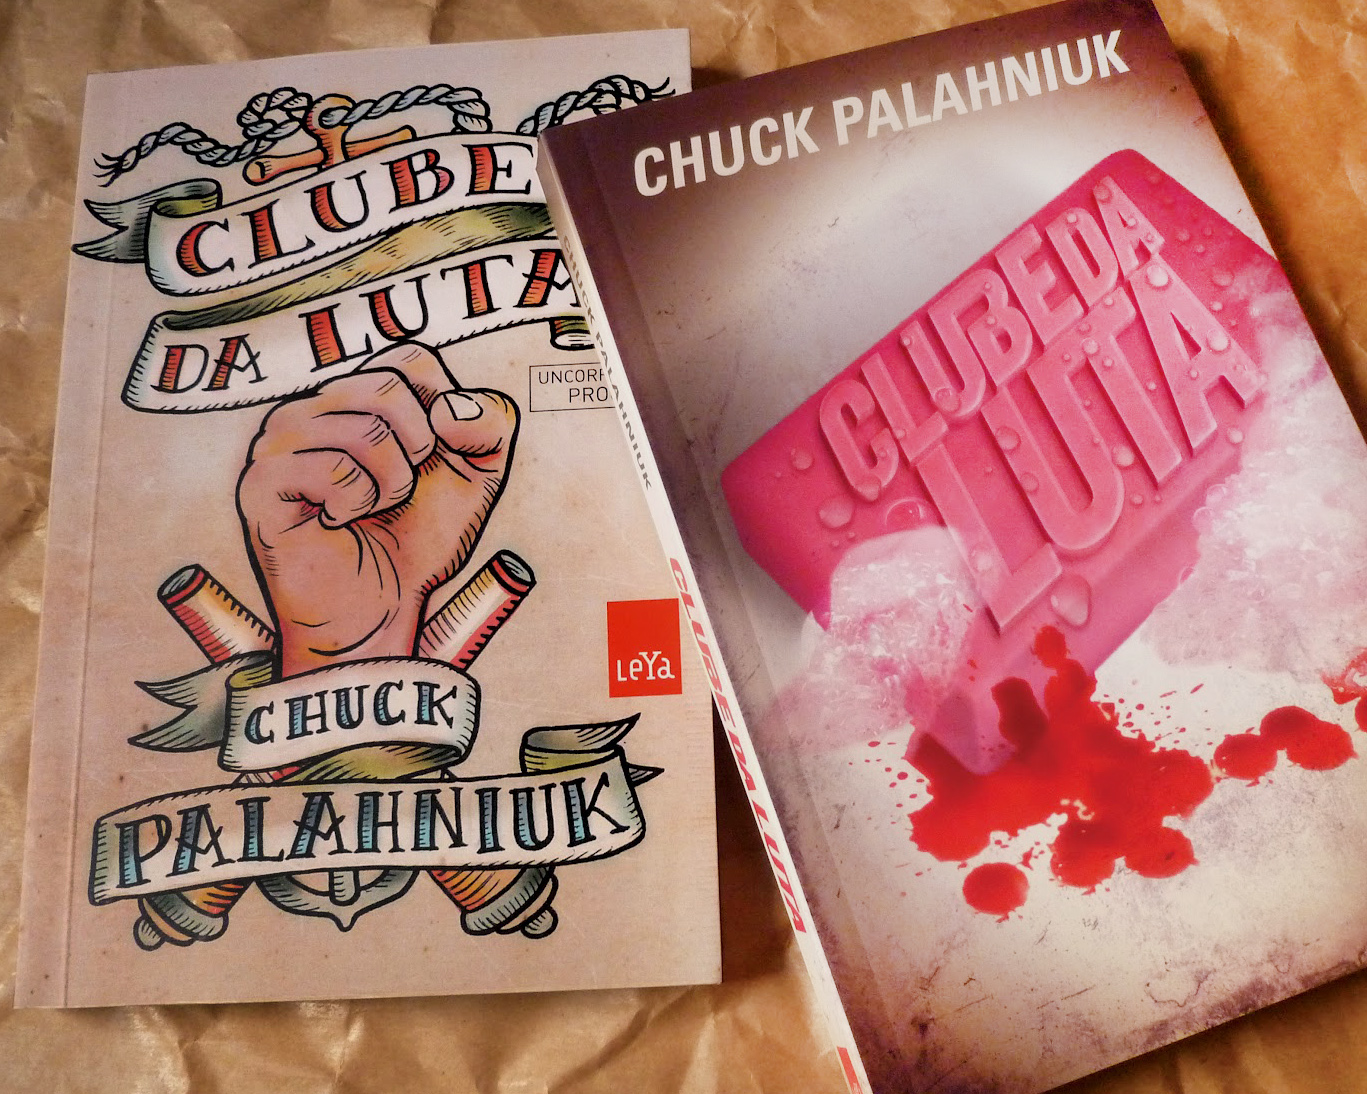 Kit com 3 Livros - Chuck Palahniuk: Clube da Luta + Invente alguma coi -  Aquarela Livros